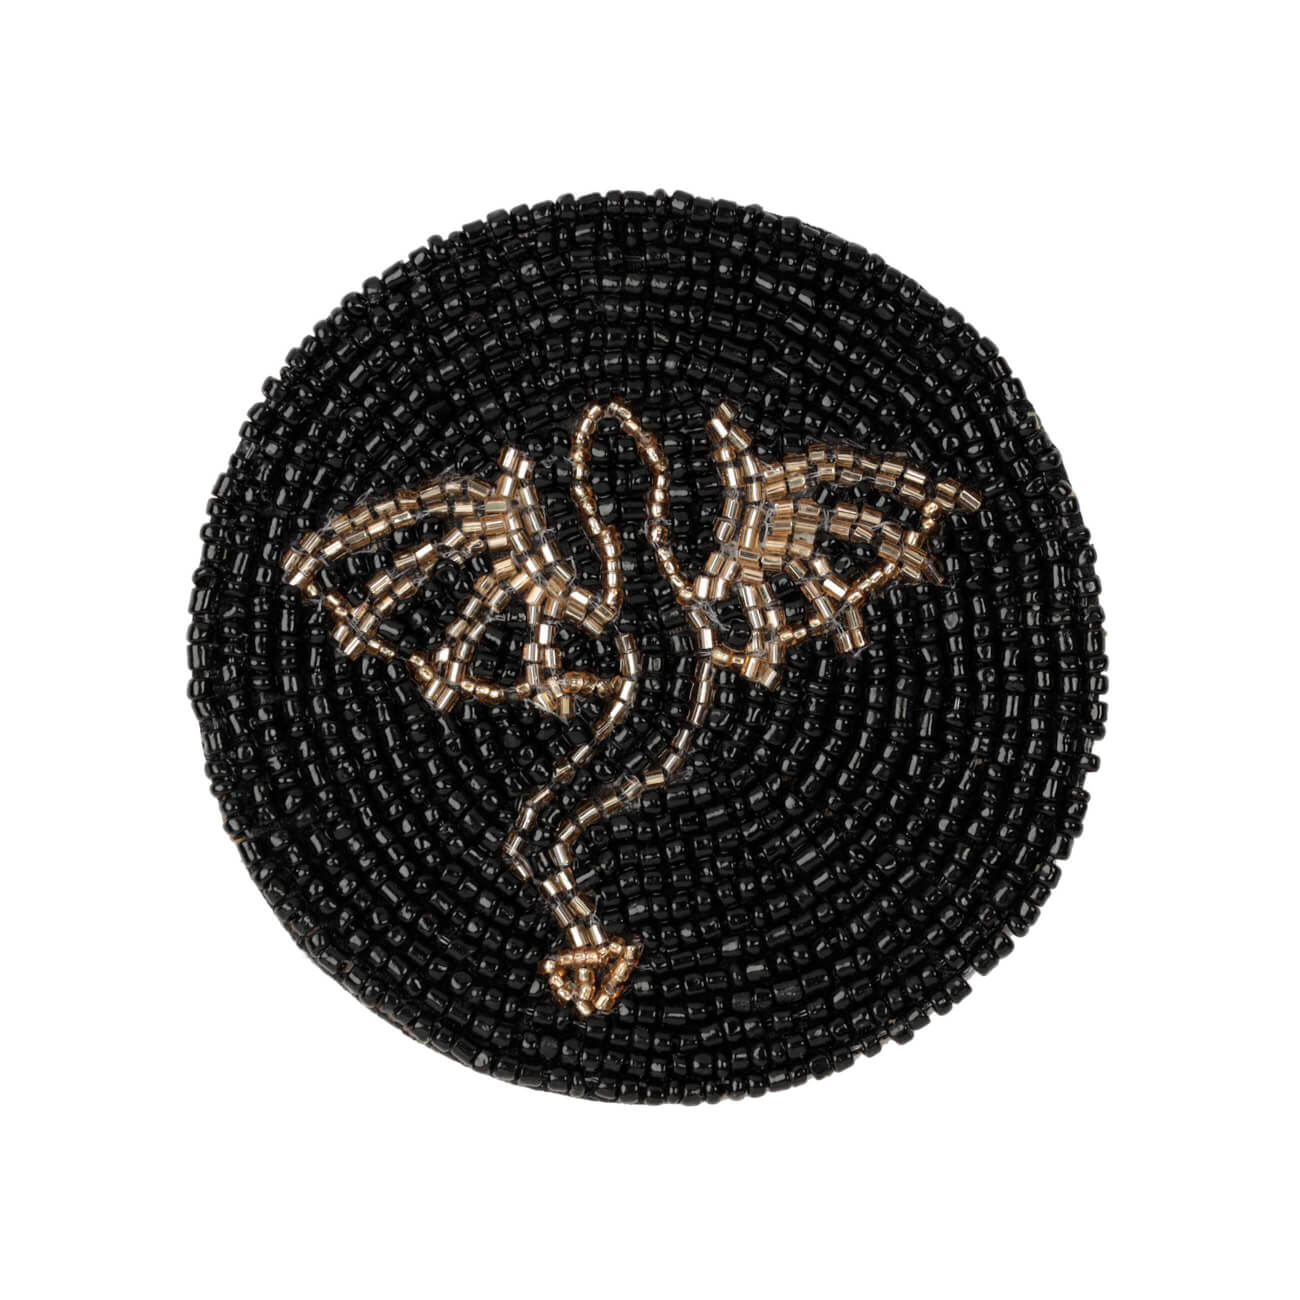 Подставка под кружку, 10 см, бисер, круглая, черная, Дракон, Art beads